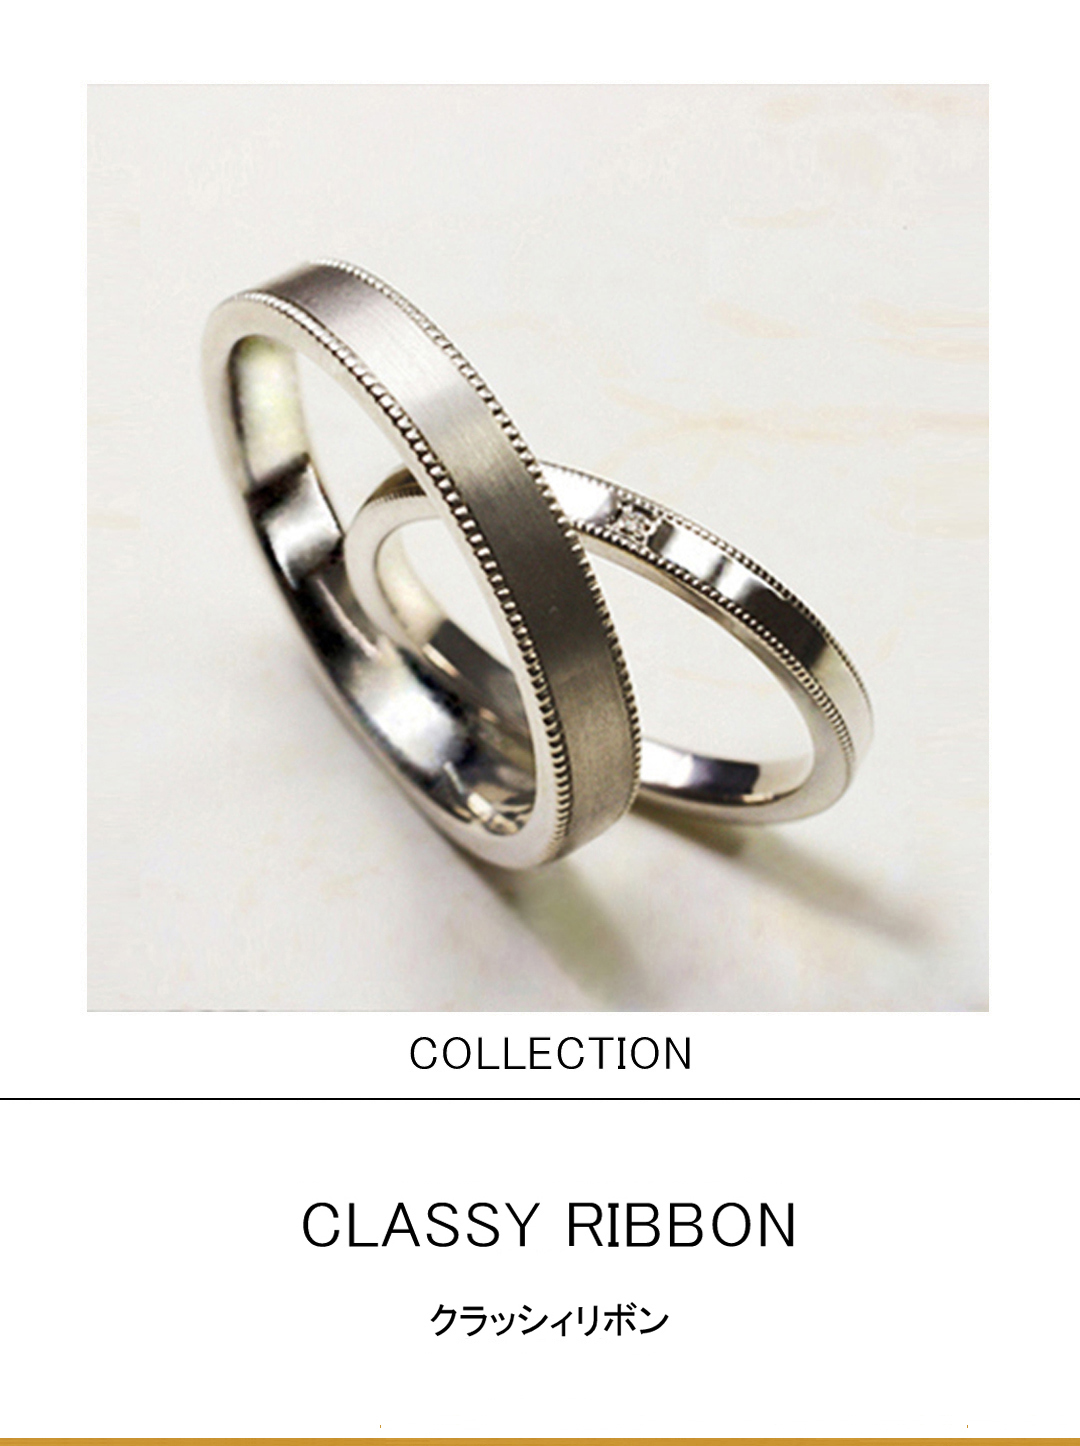 【リボンステッチをプラチナで】デザインしたミルグレインの結婚指輪のサムネイル